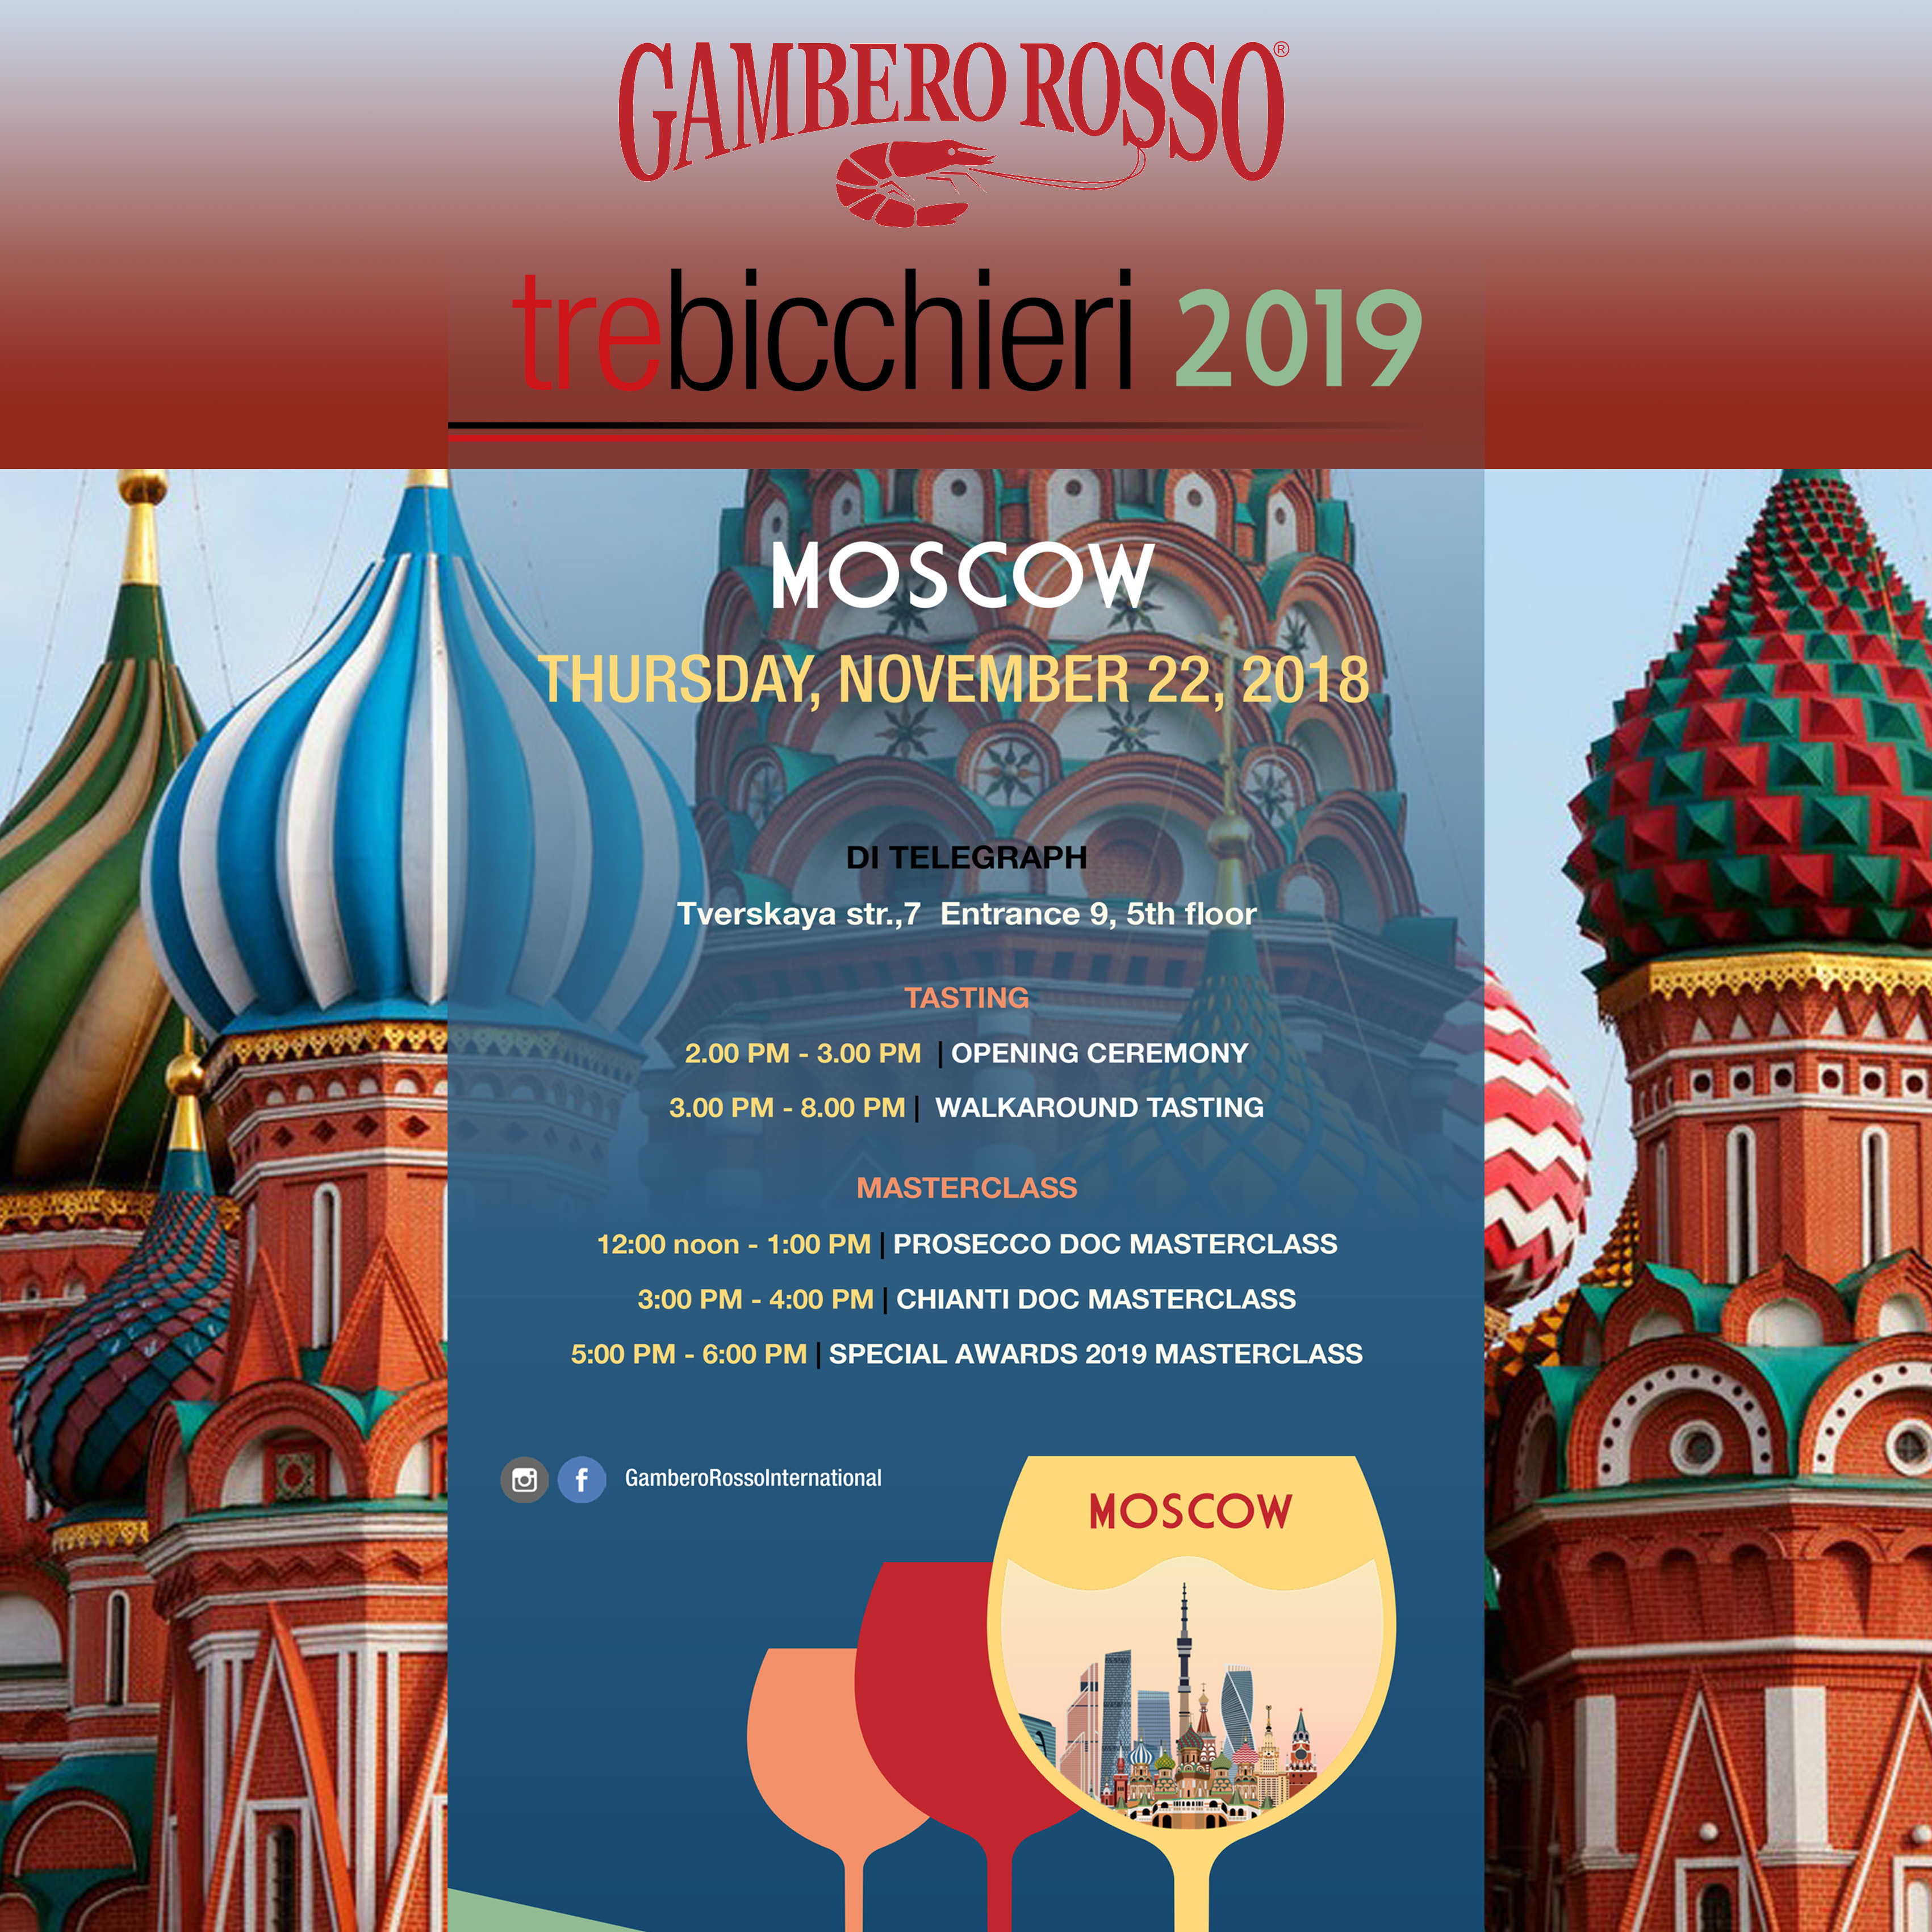 Gambero Rosso Moscow 2019 Marotti Campi